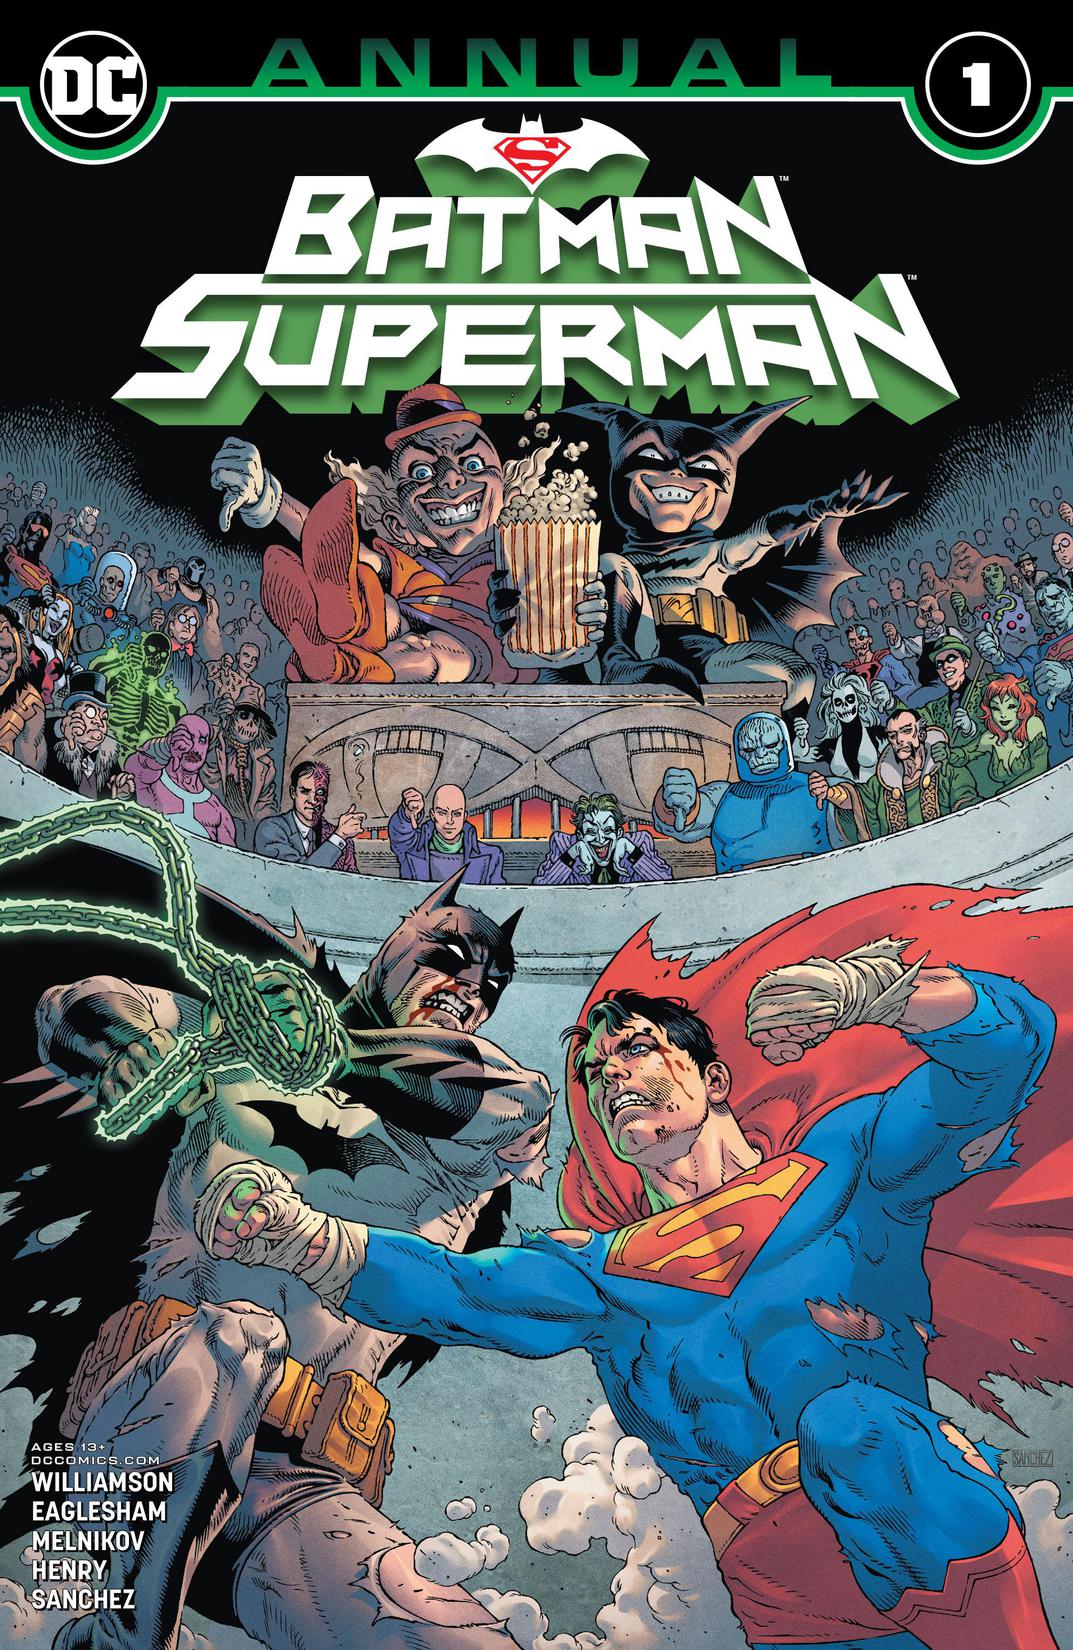 Batman/Superman Annual (2020-) #1 preview images